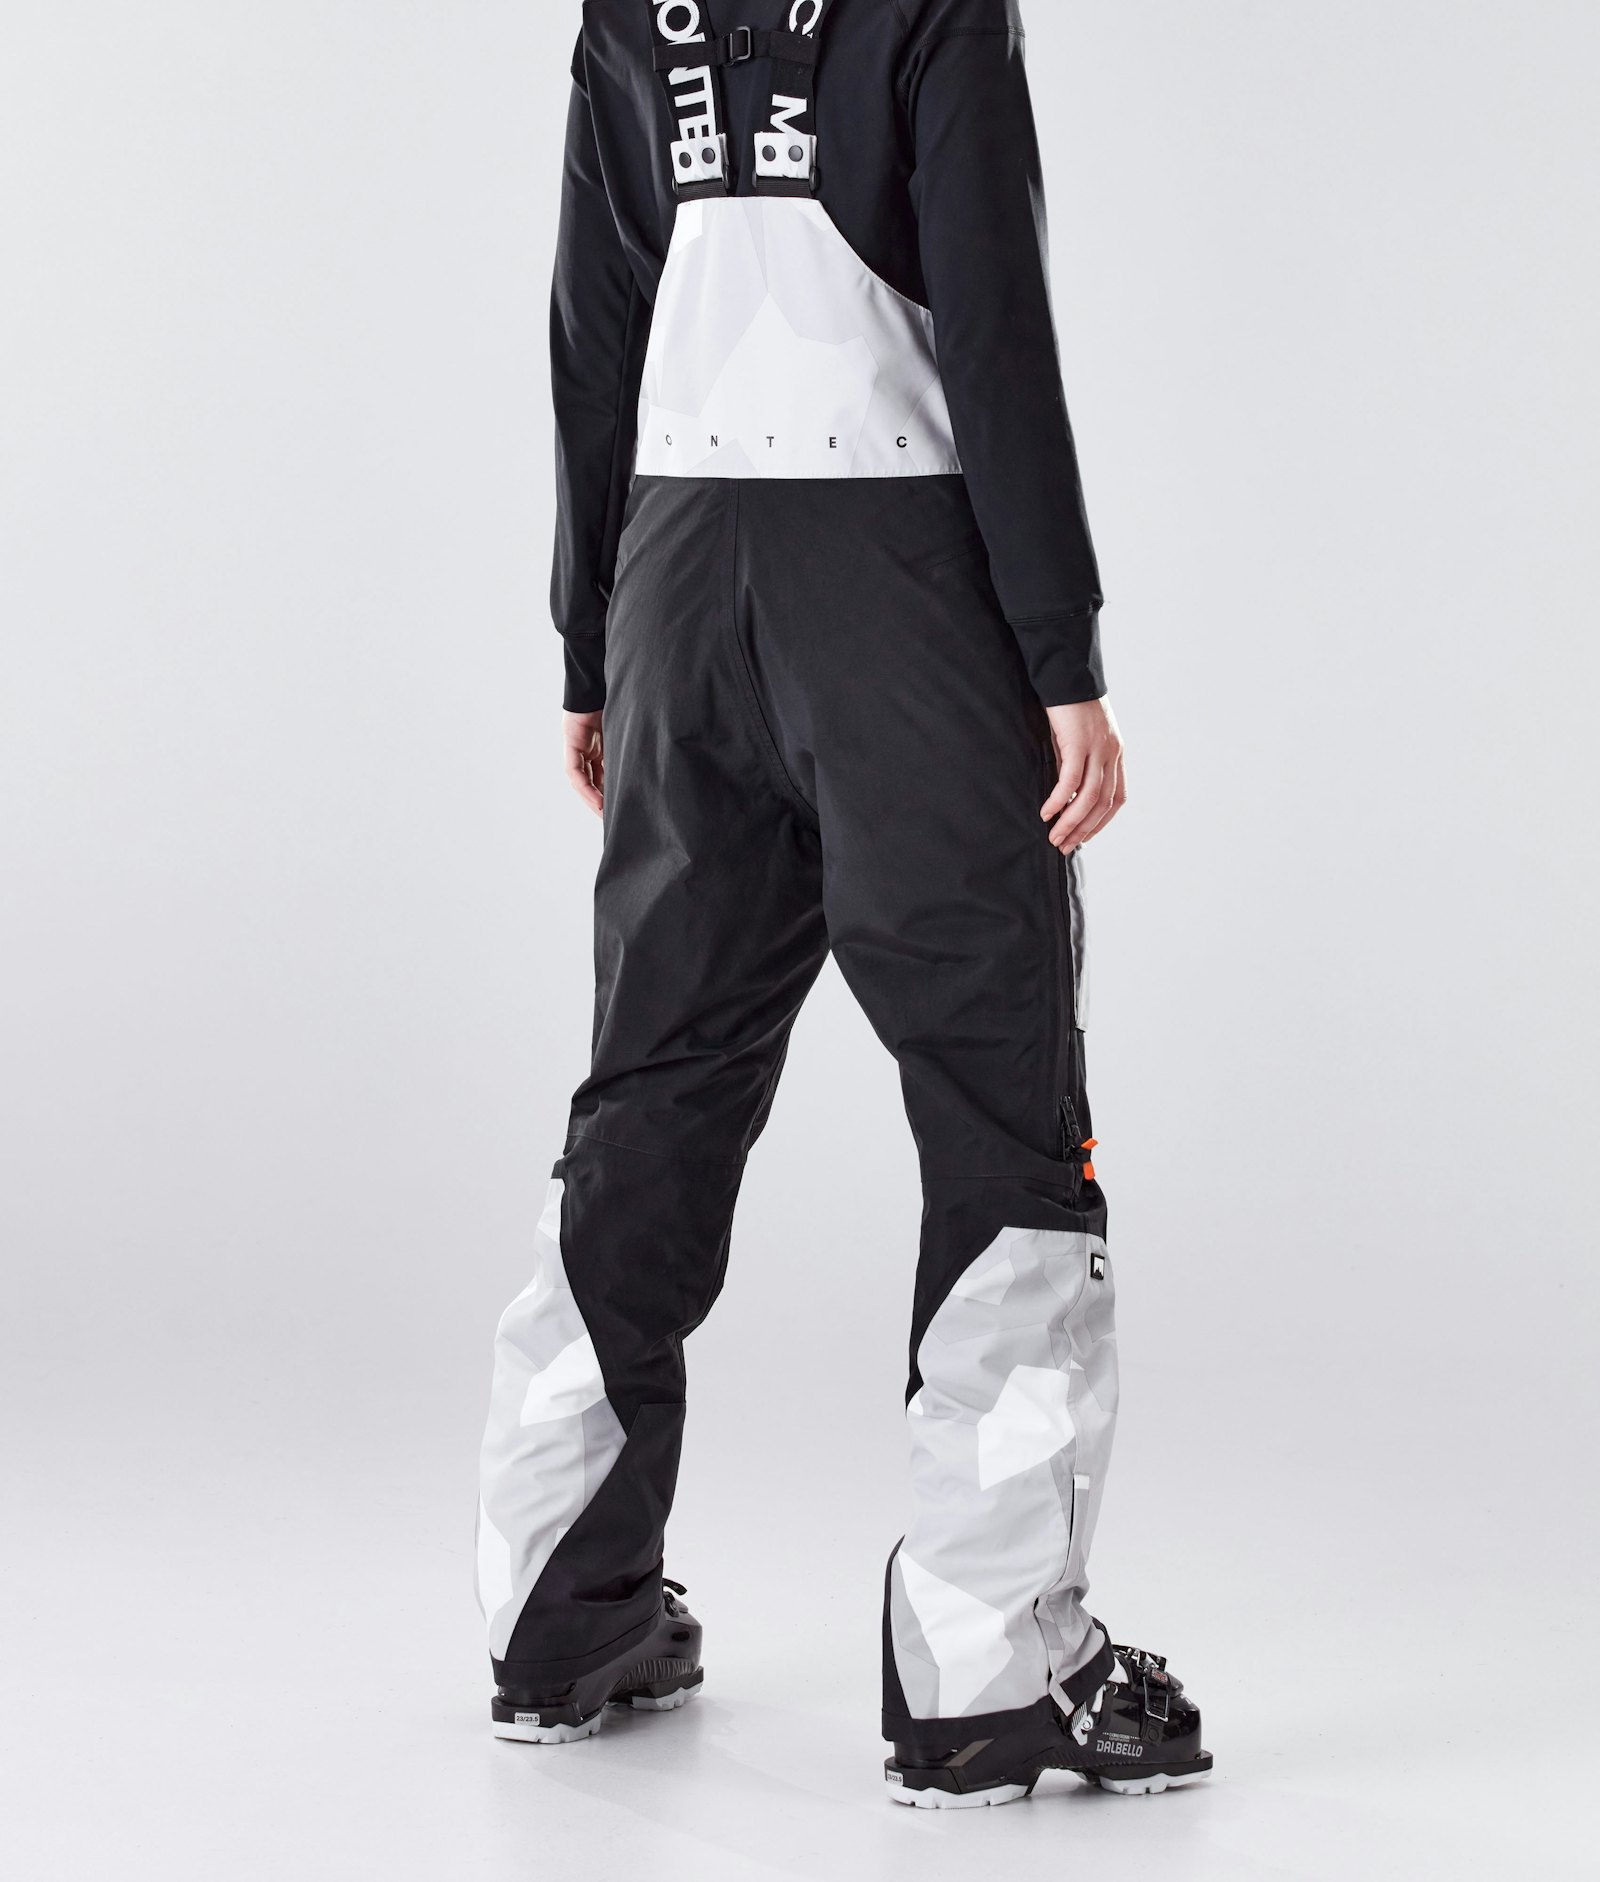 Fawk W 2020 Pantalones Esquí Mujer Snow Camo/Black